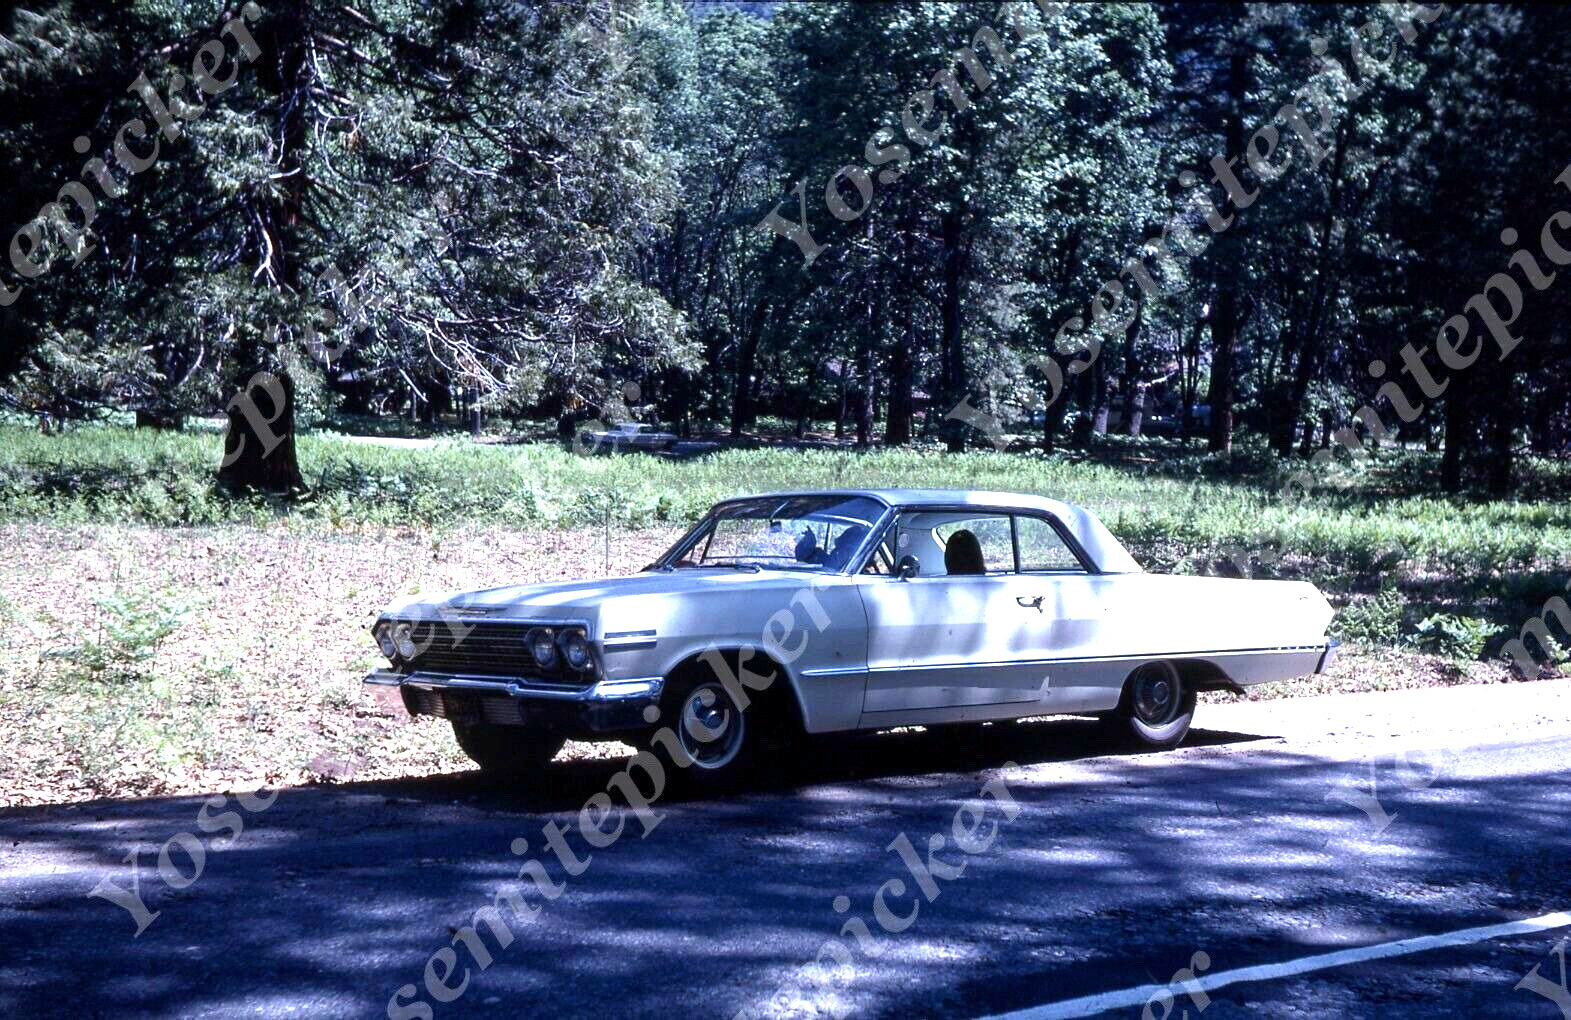 sl52  Original Slide 1969  white Chevy Impala car 353a